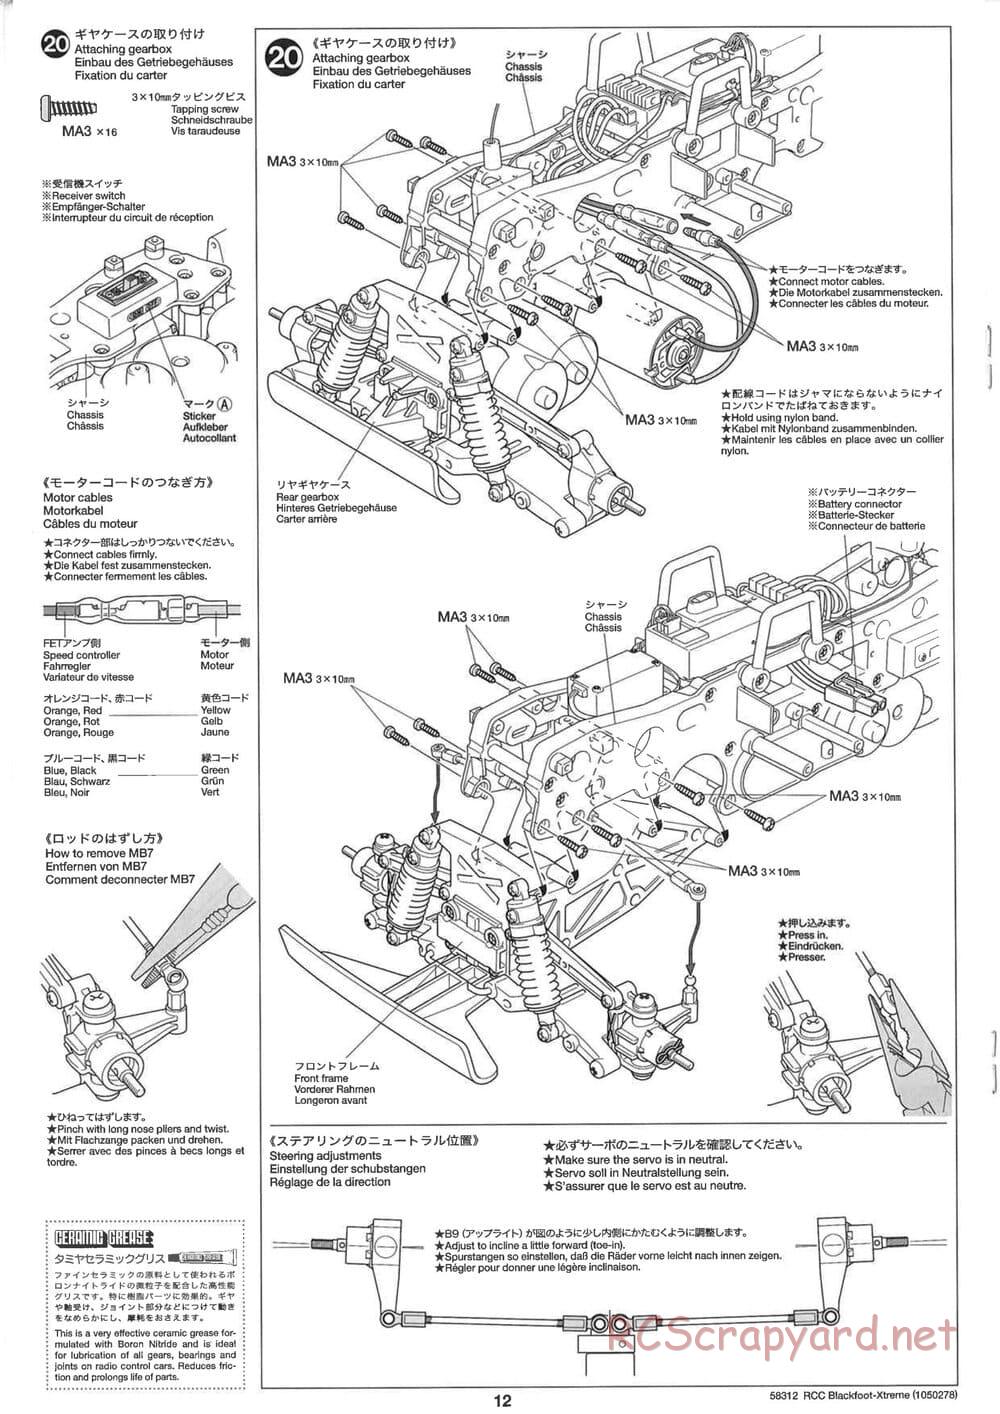 Tamiya - Blackfoot Xtreme - WT-01 Chassis - Manual - Page 12